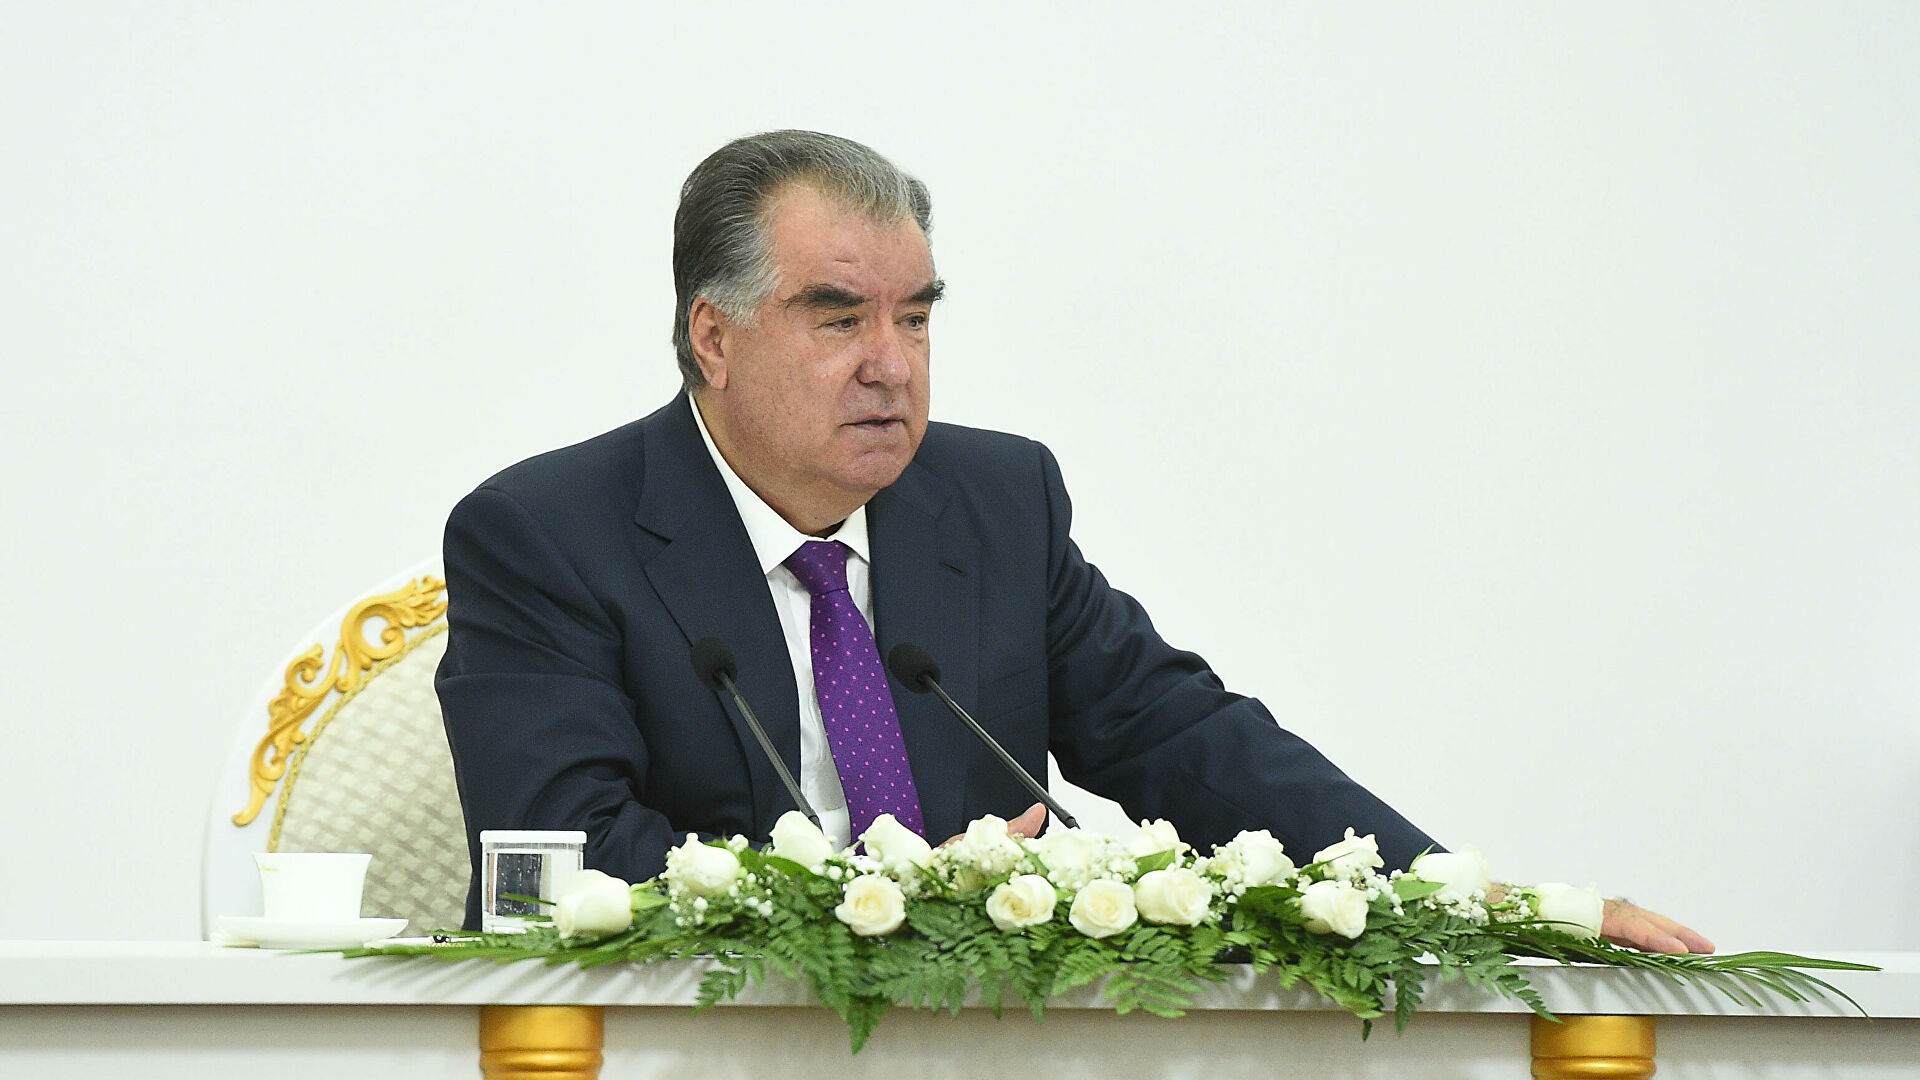 Ежегодное заседание правительства Таджикистана завершилось за закрытыми дверями 20 января, в отсутствие независимых журналистов.